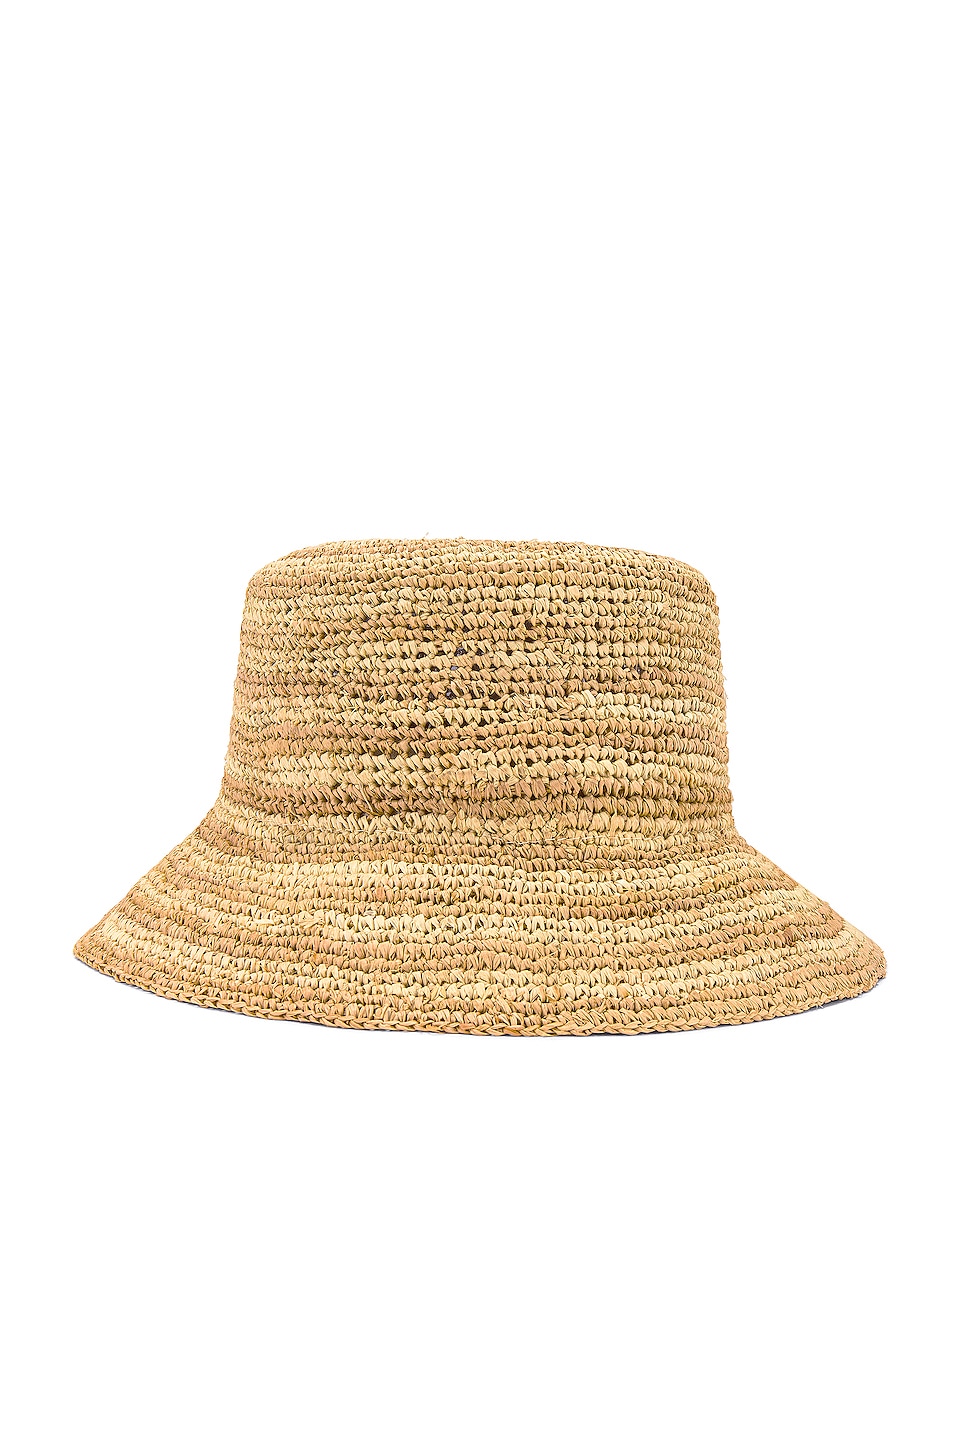 L*SPACE Isadora Hat in Natural Stripe | REVOLVE